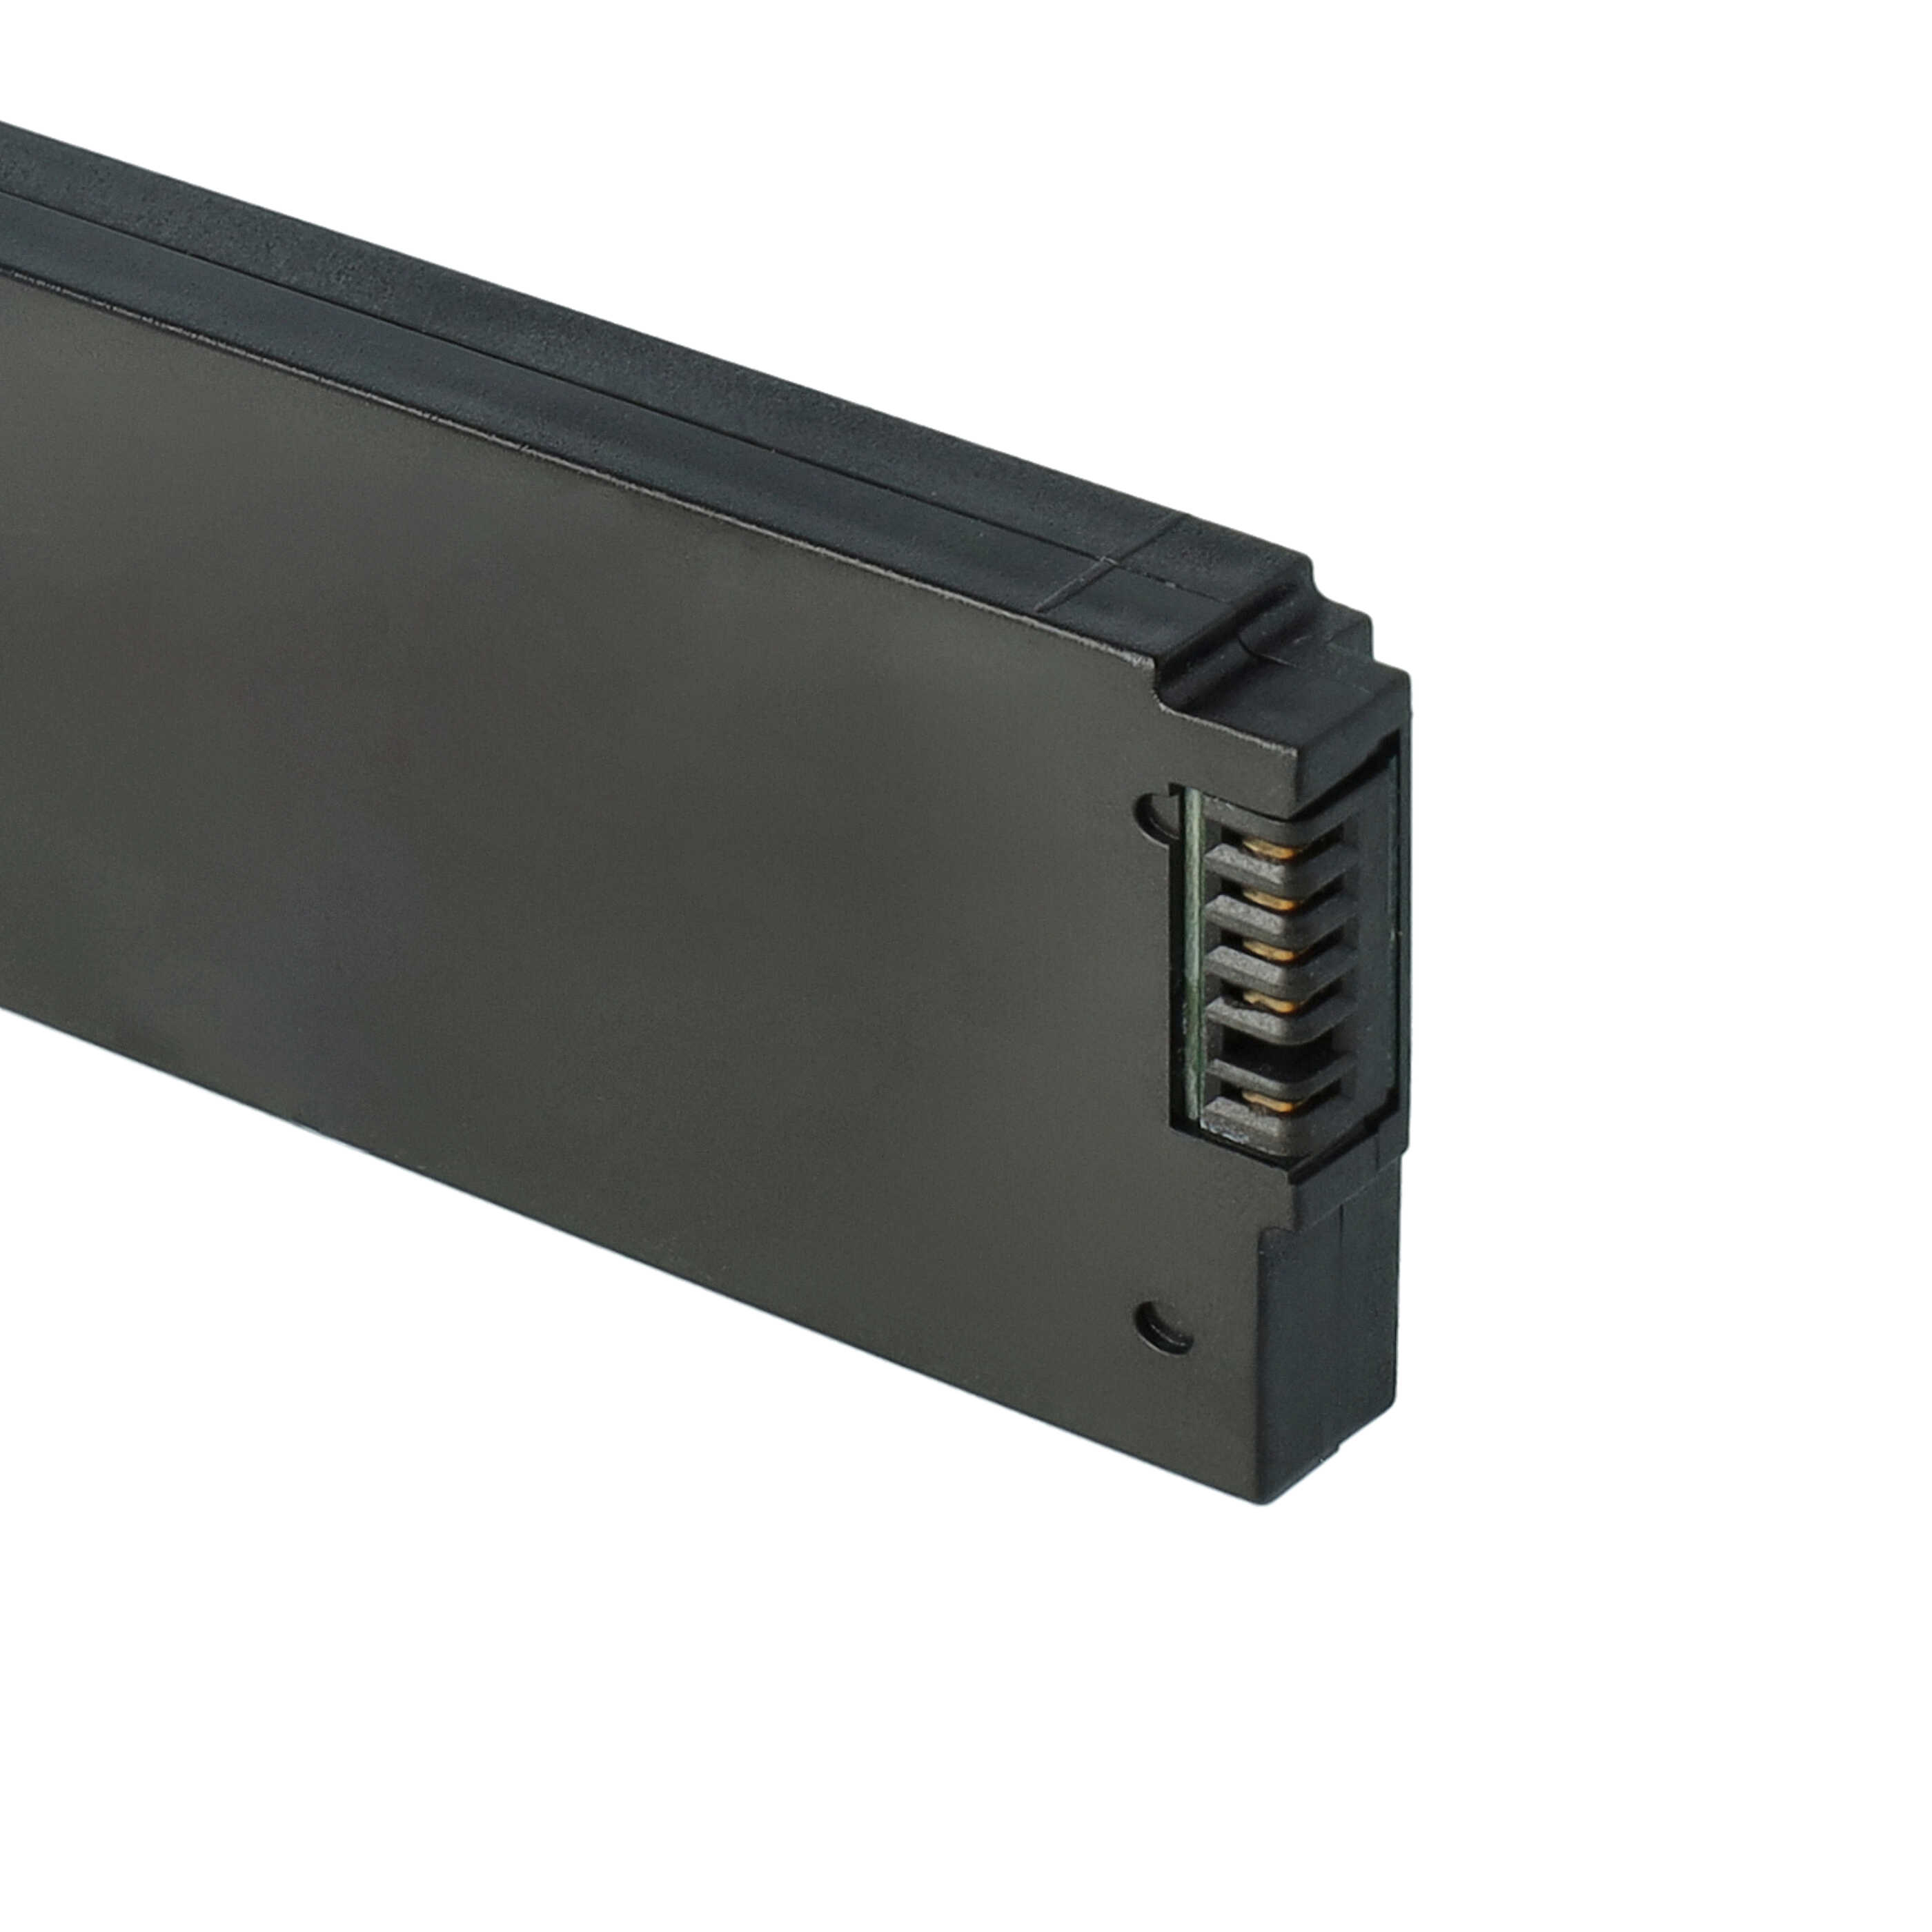 Akumulator do bezprzewodowego touchpada / trackpada zamiennik AMX FG5965-20 - 3600 mAh 7,4 V LiPo